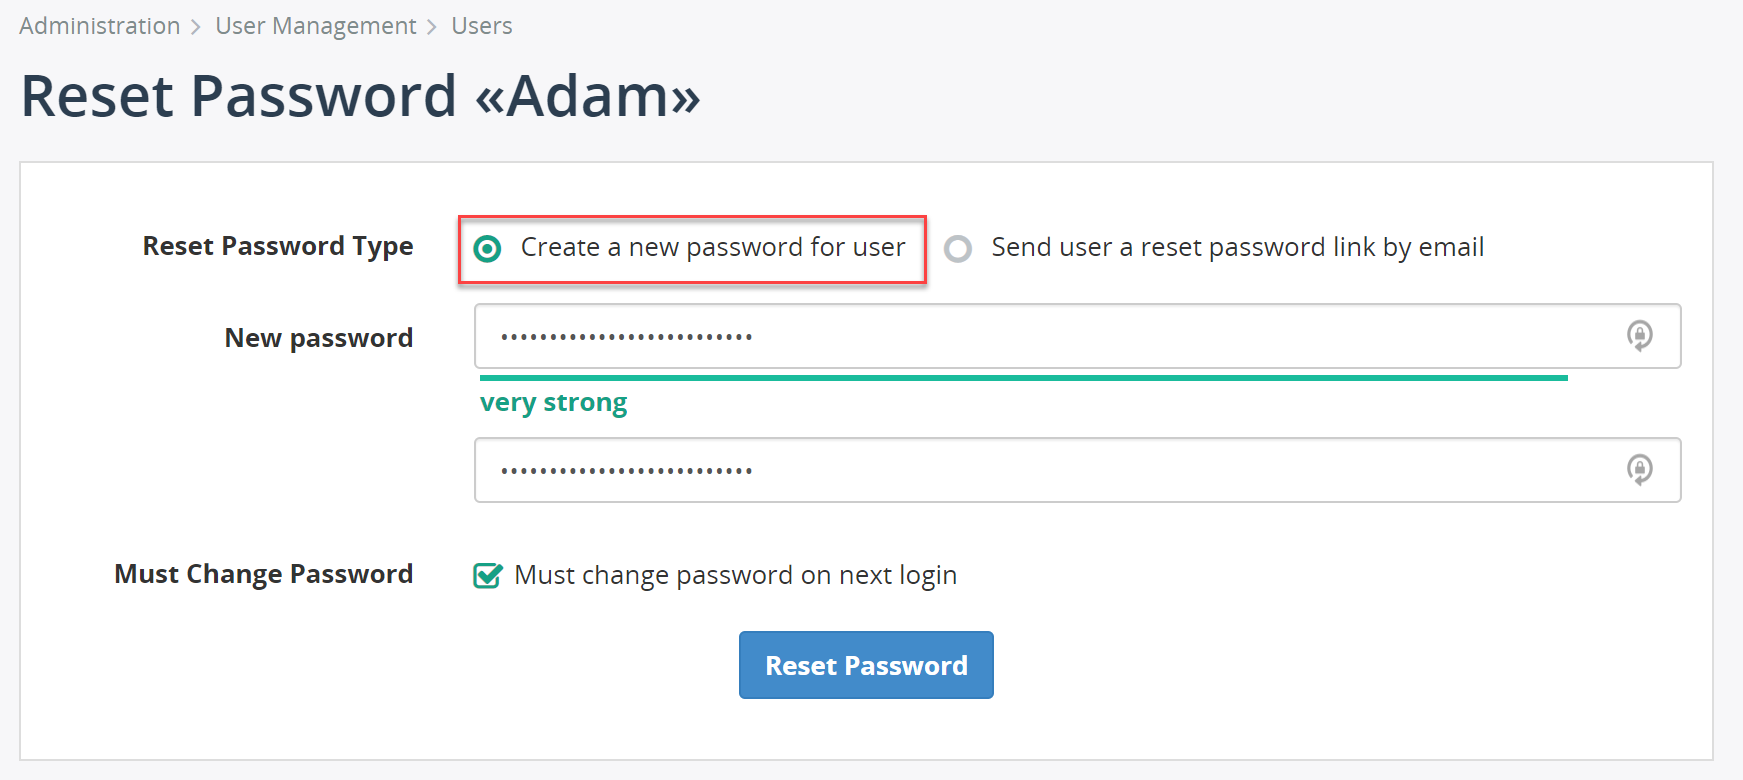 Reset password link